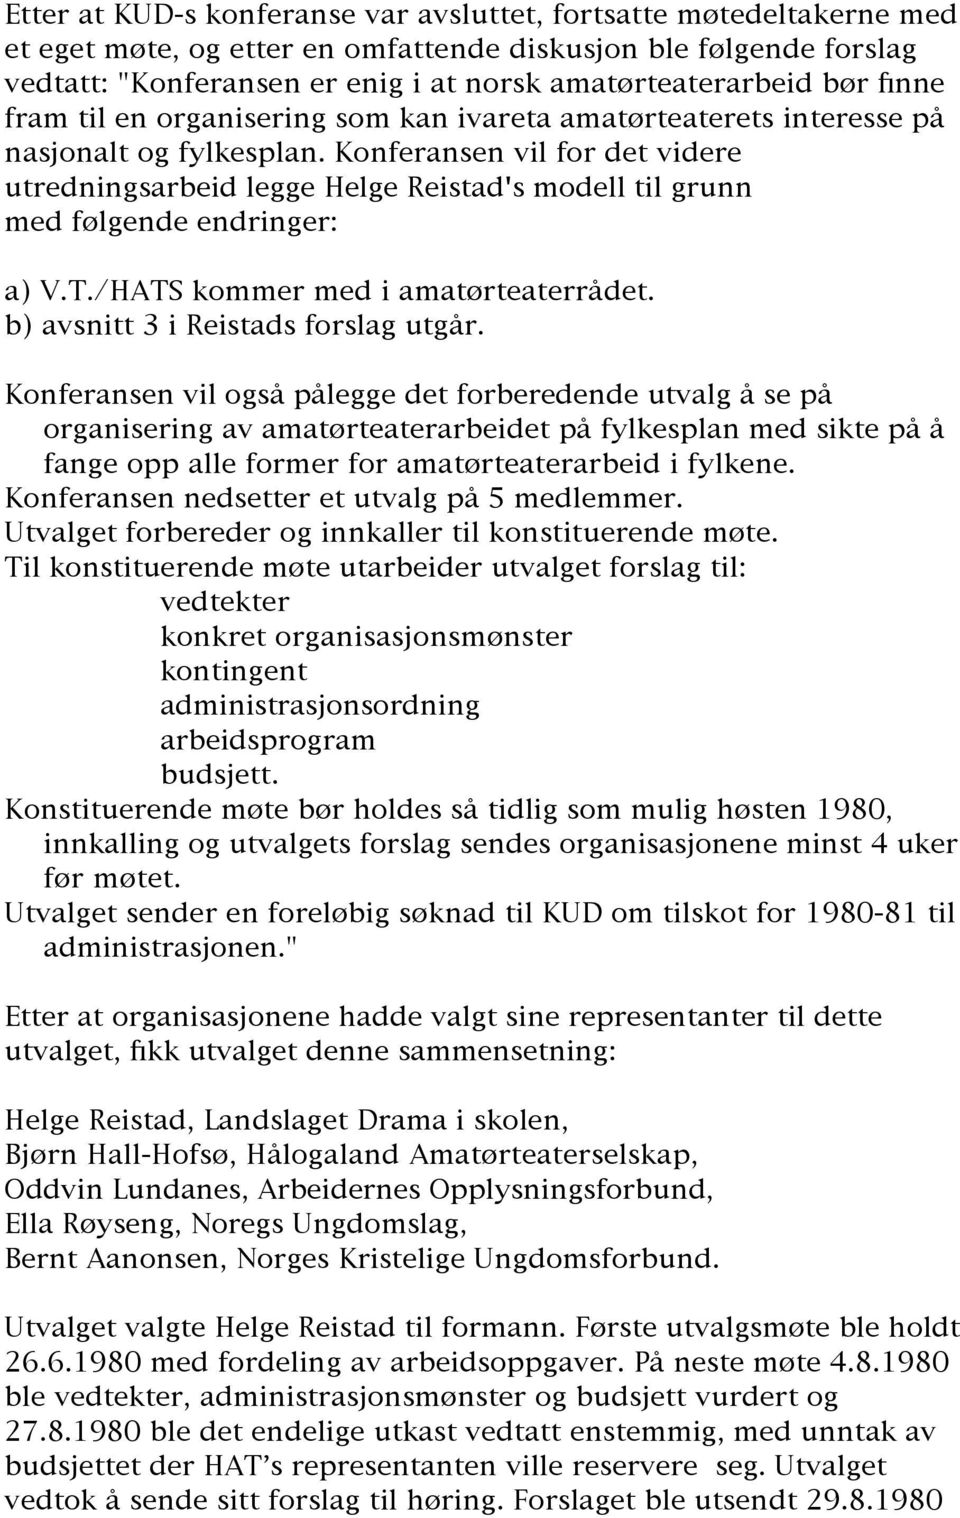 Konferansen vil for det videre utredningsarbeid legge Helge Reistad's modell til grunn med følgende endringer: a) V.T./HATS kommer med i amatørteaterrådet. b) avsnitt 3 i Reistads forslag utgår.